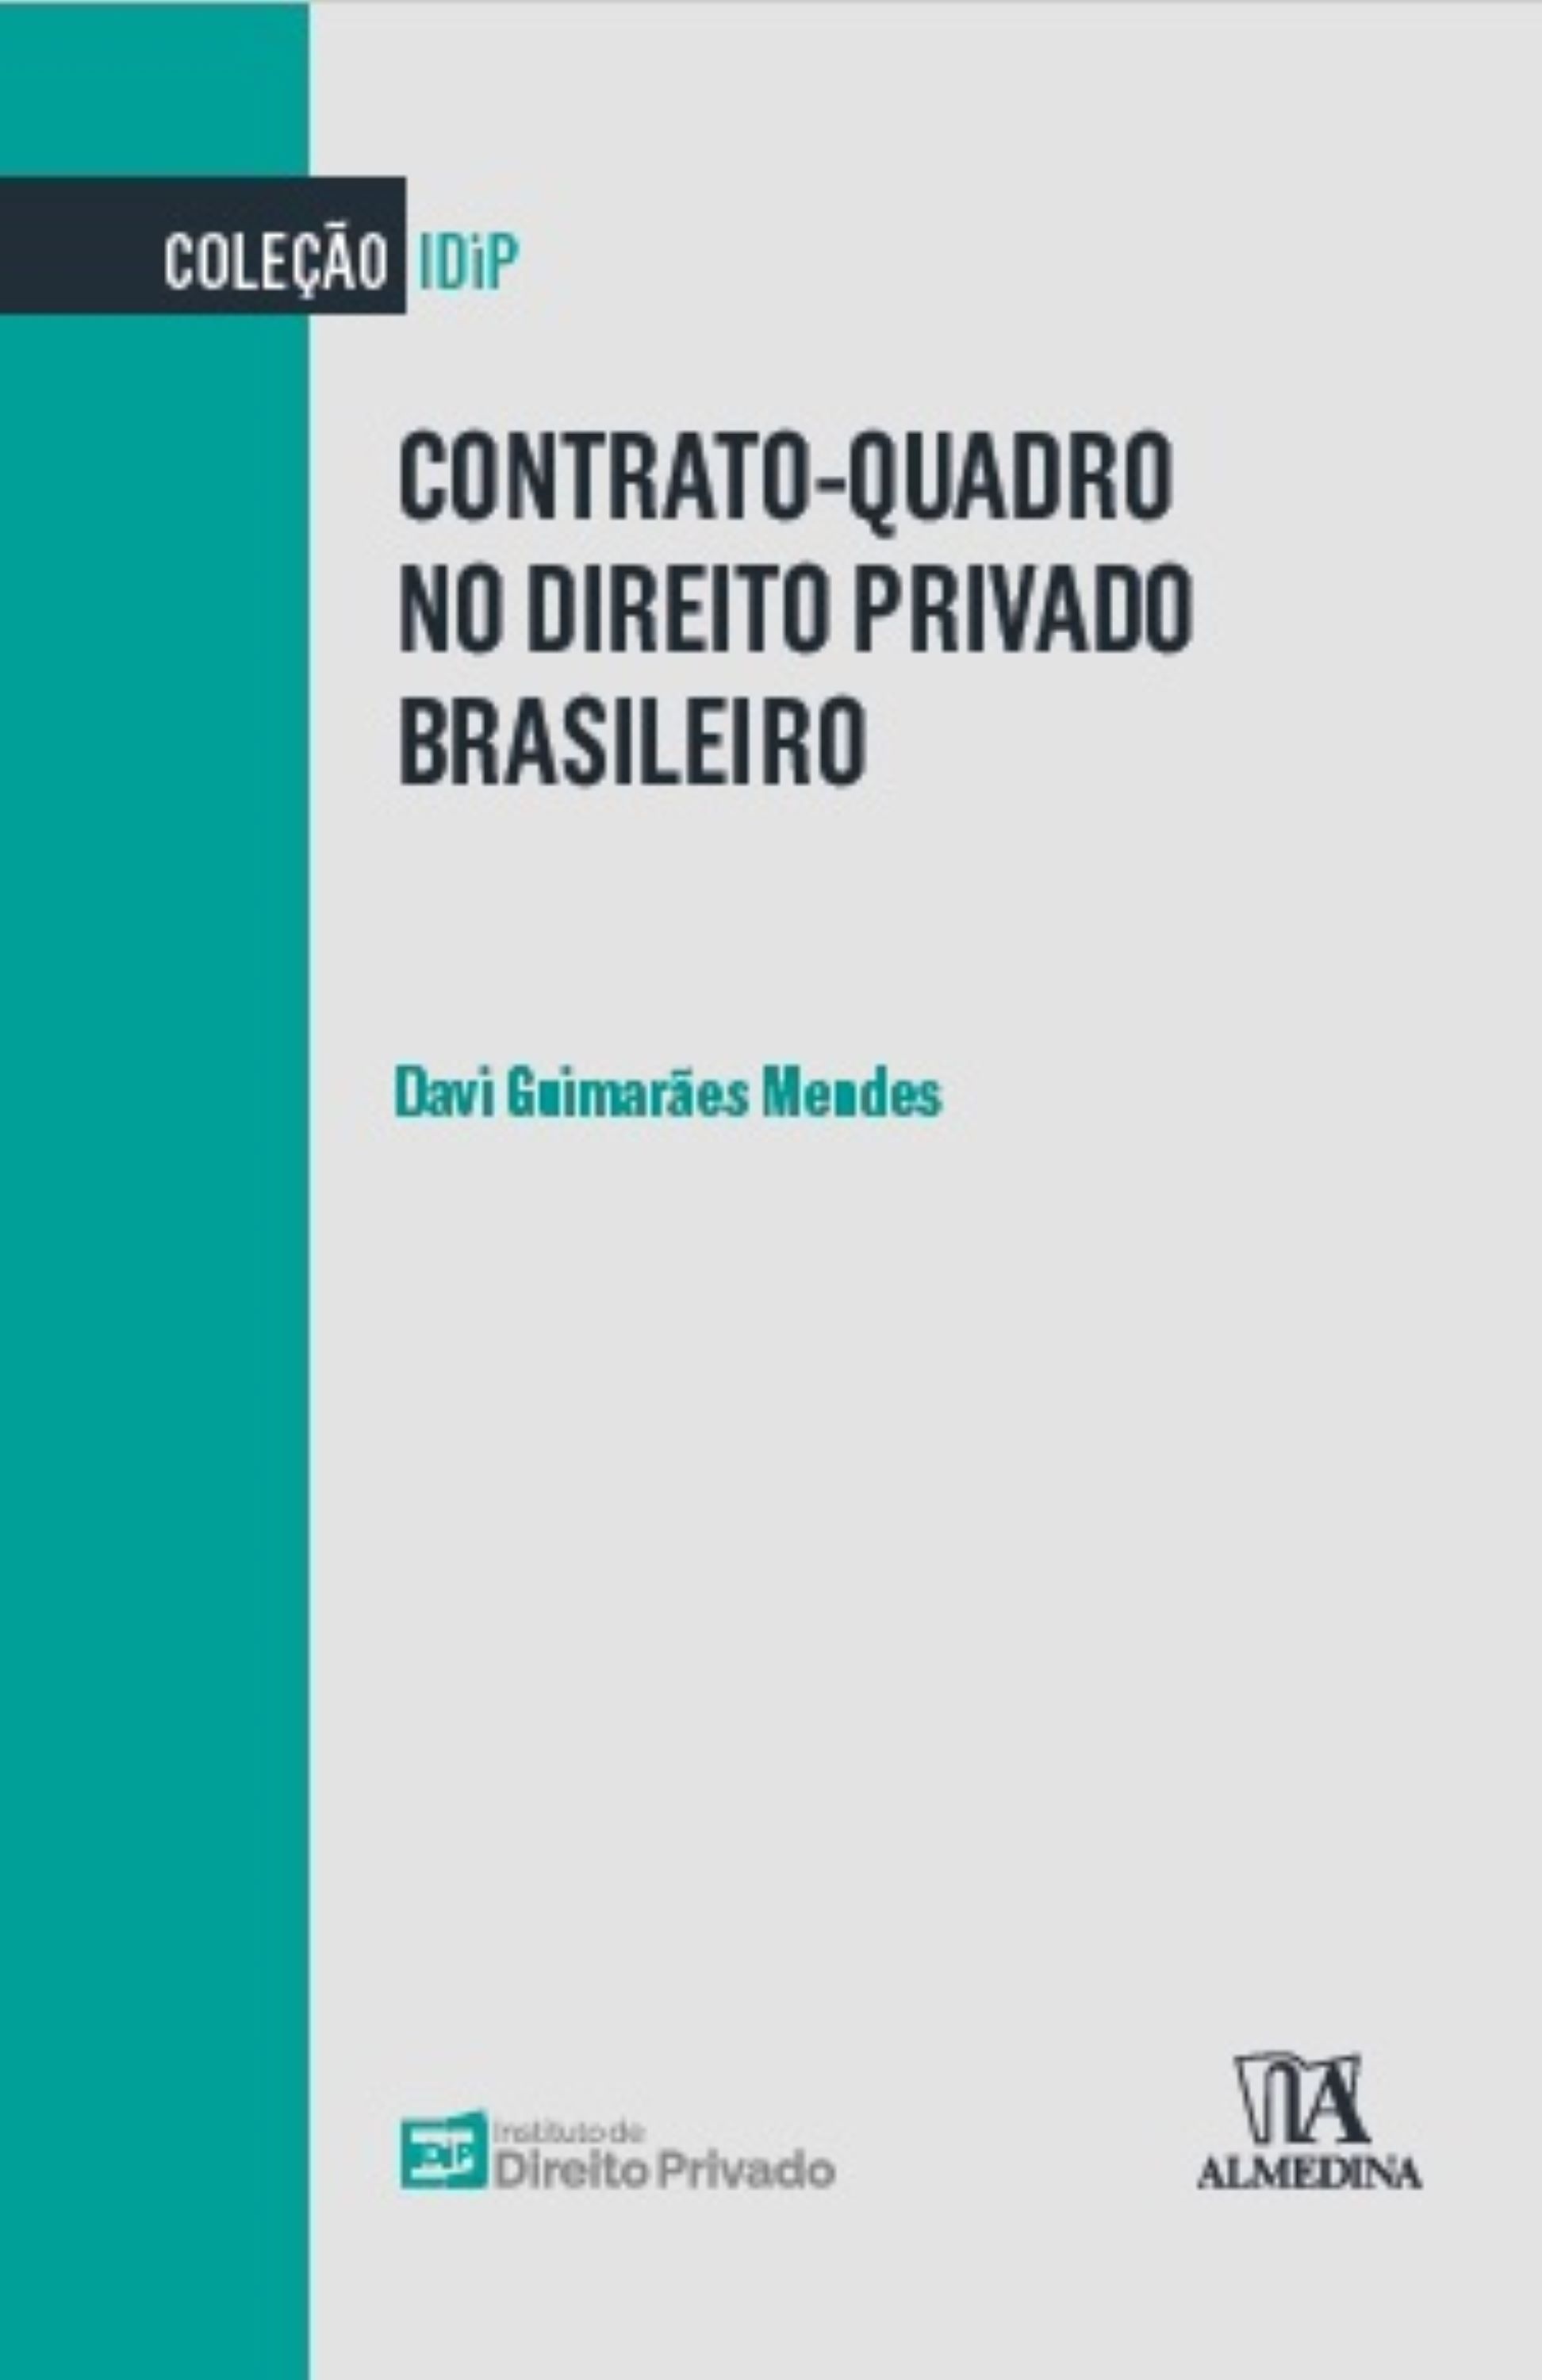 Contrato-quadro no direito privado brasileiro